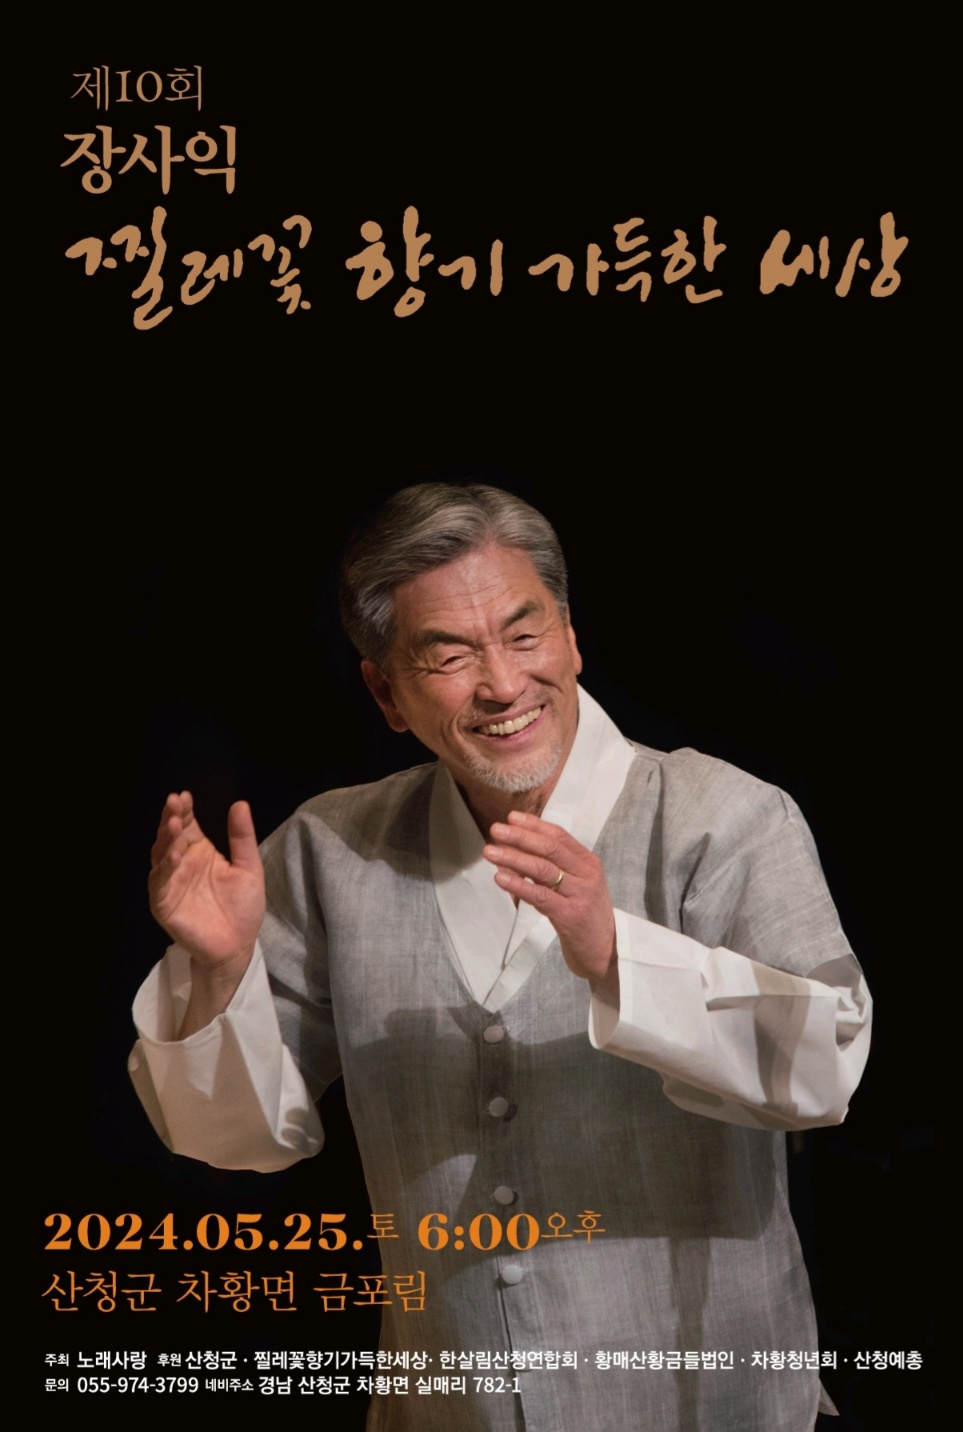 『제10회 장사익 찔레꽃 음악회』 개최 안내 1